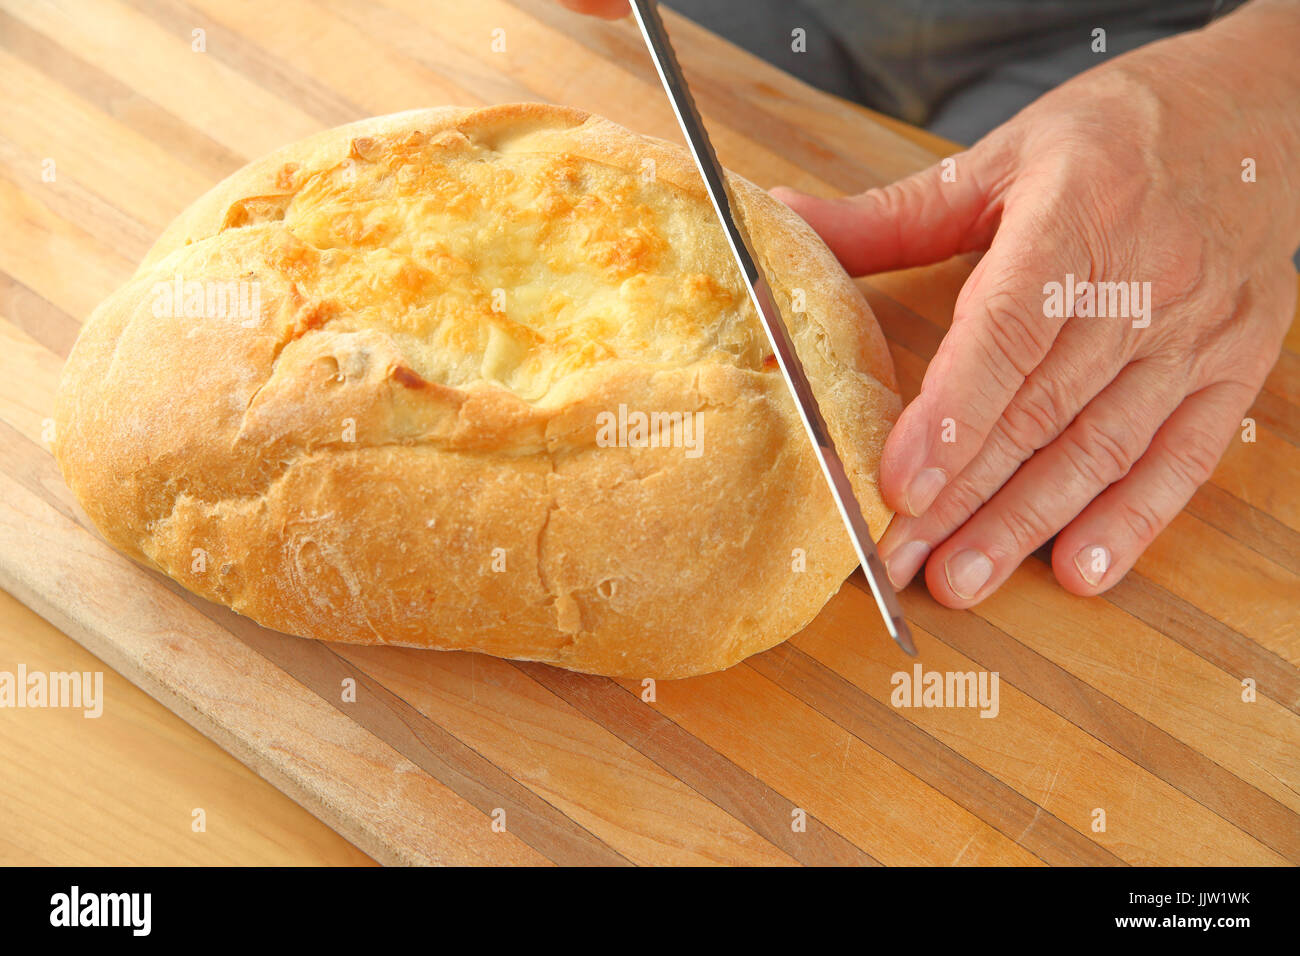 Un homme commence à couper les coupes d'une miche de pain au fromage artisanal Banque D'Images